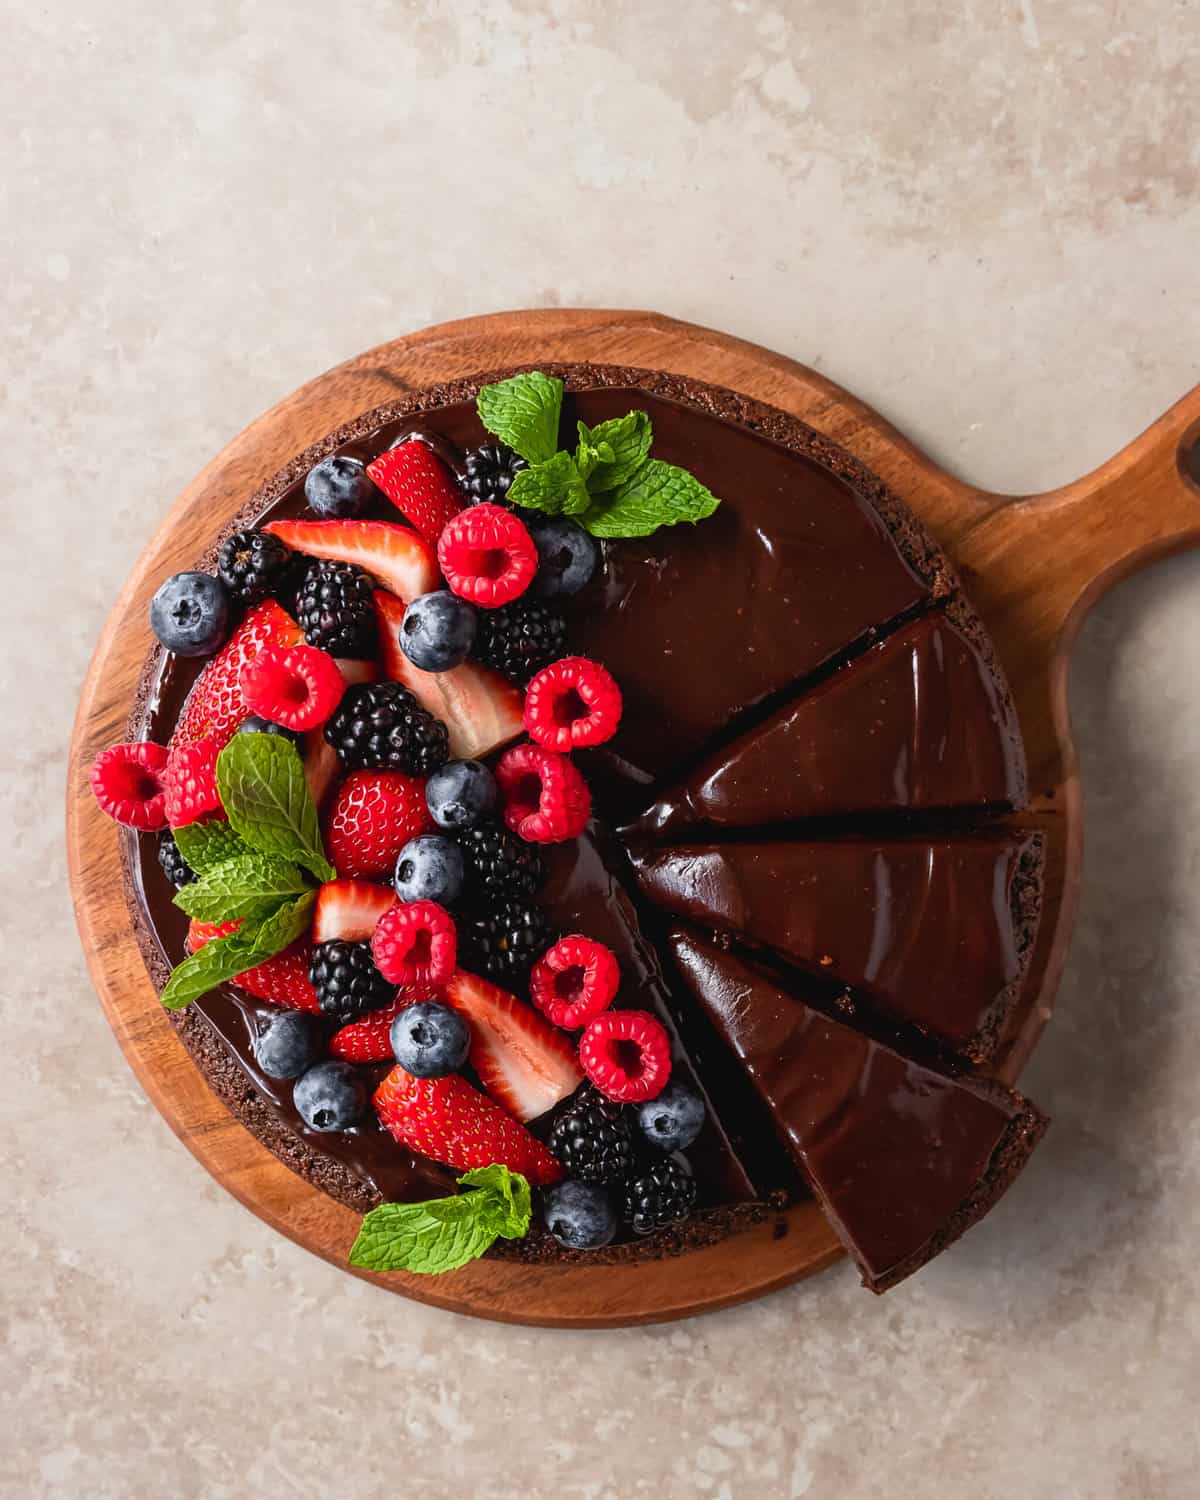 Almond Flour Chocolate Cake